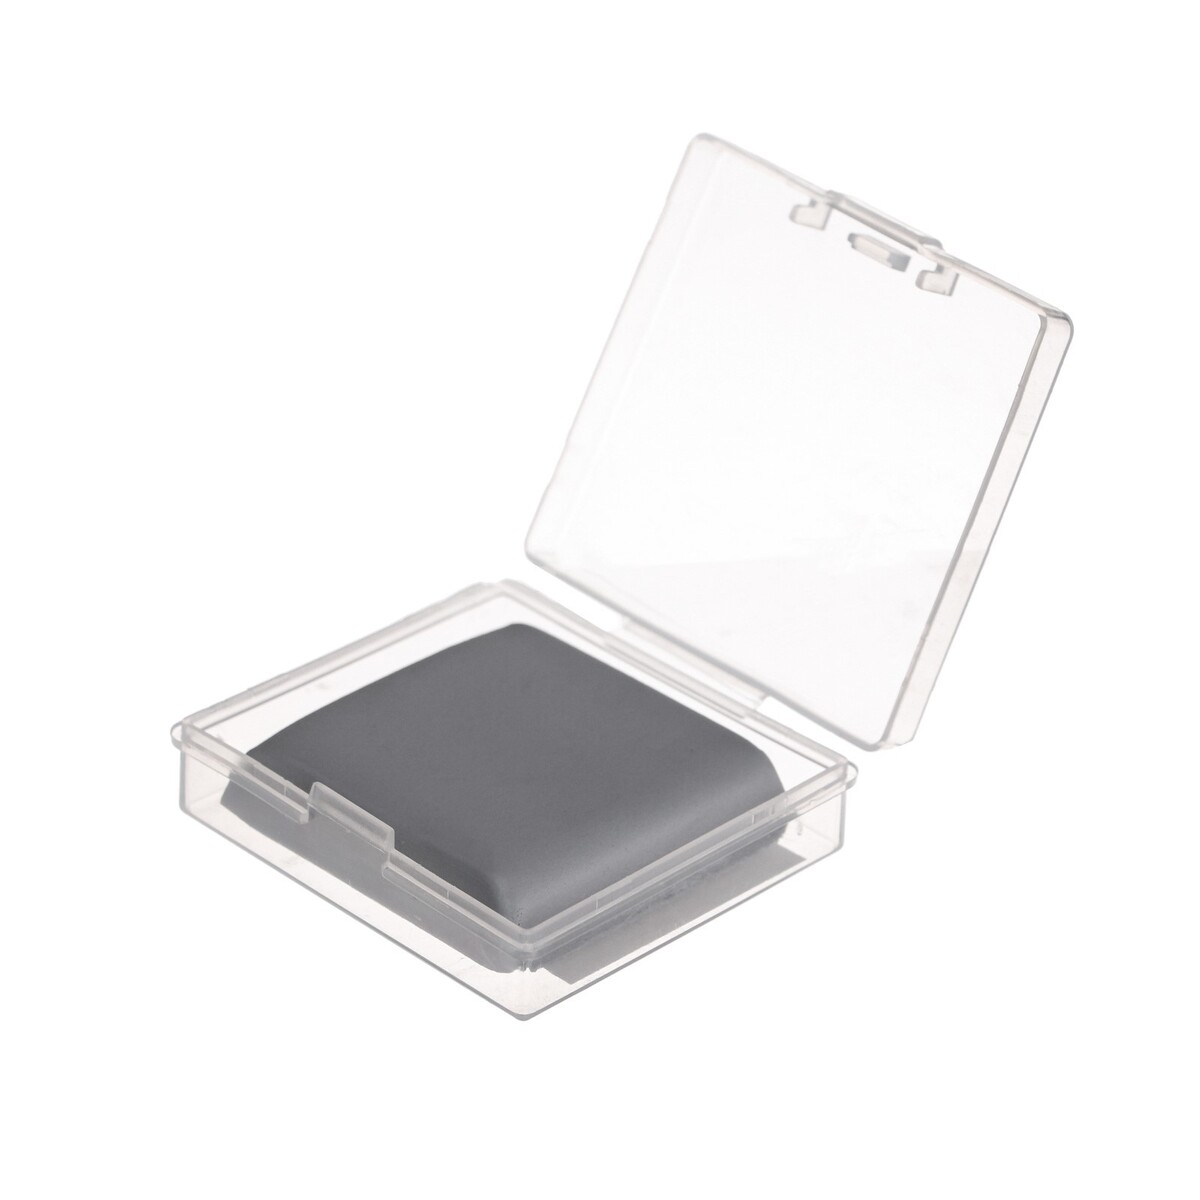 Ластик клячка прямоугольный серый, размер 37 х 35 х 0,9 мм, в коробочке ластик notebook 4 8 х 3 4 см